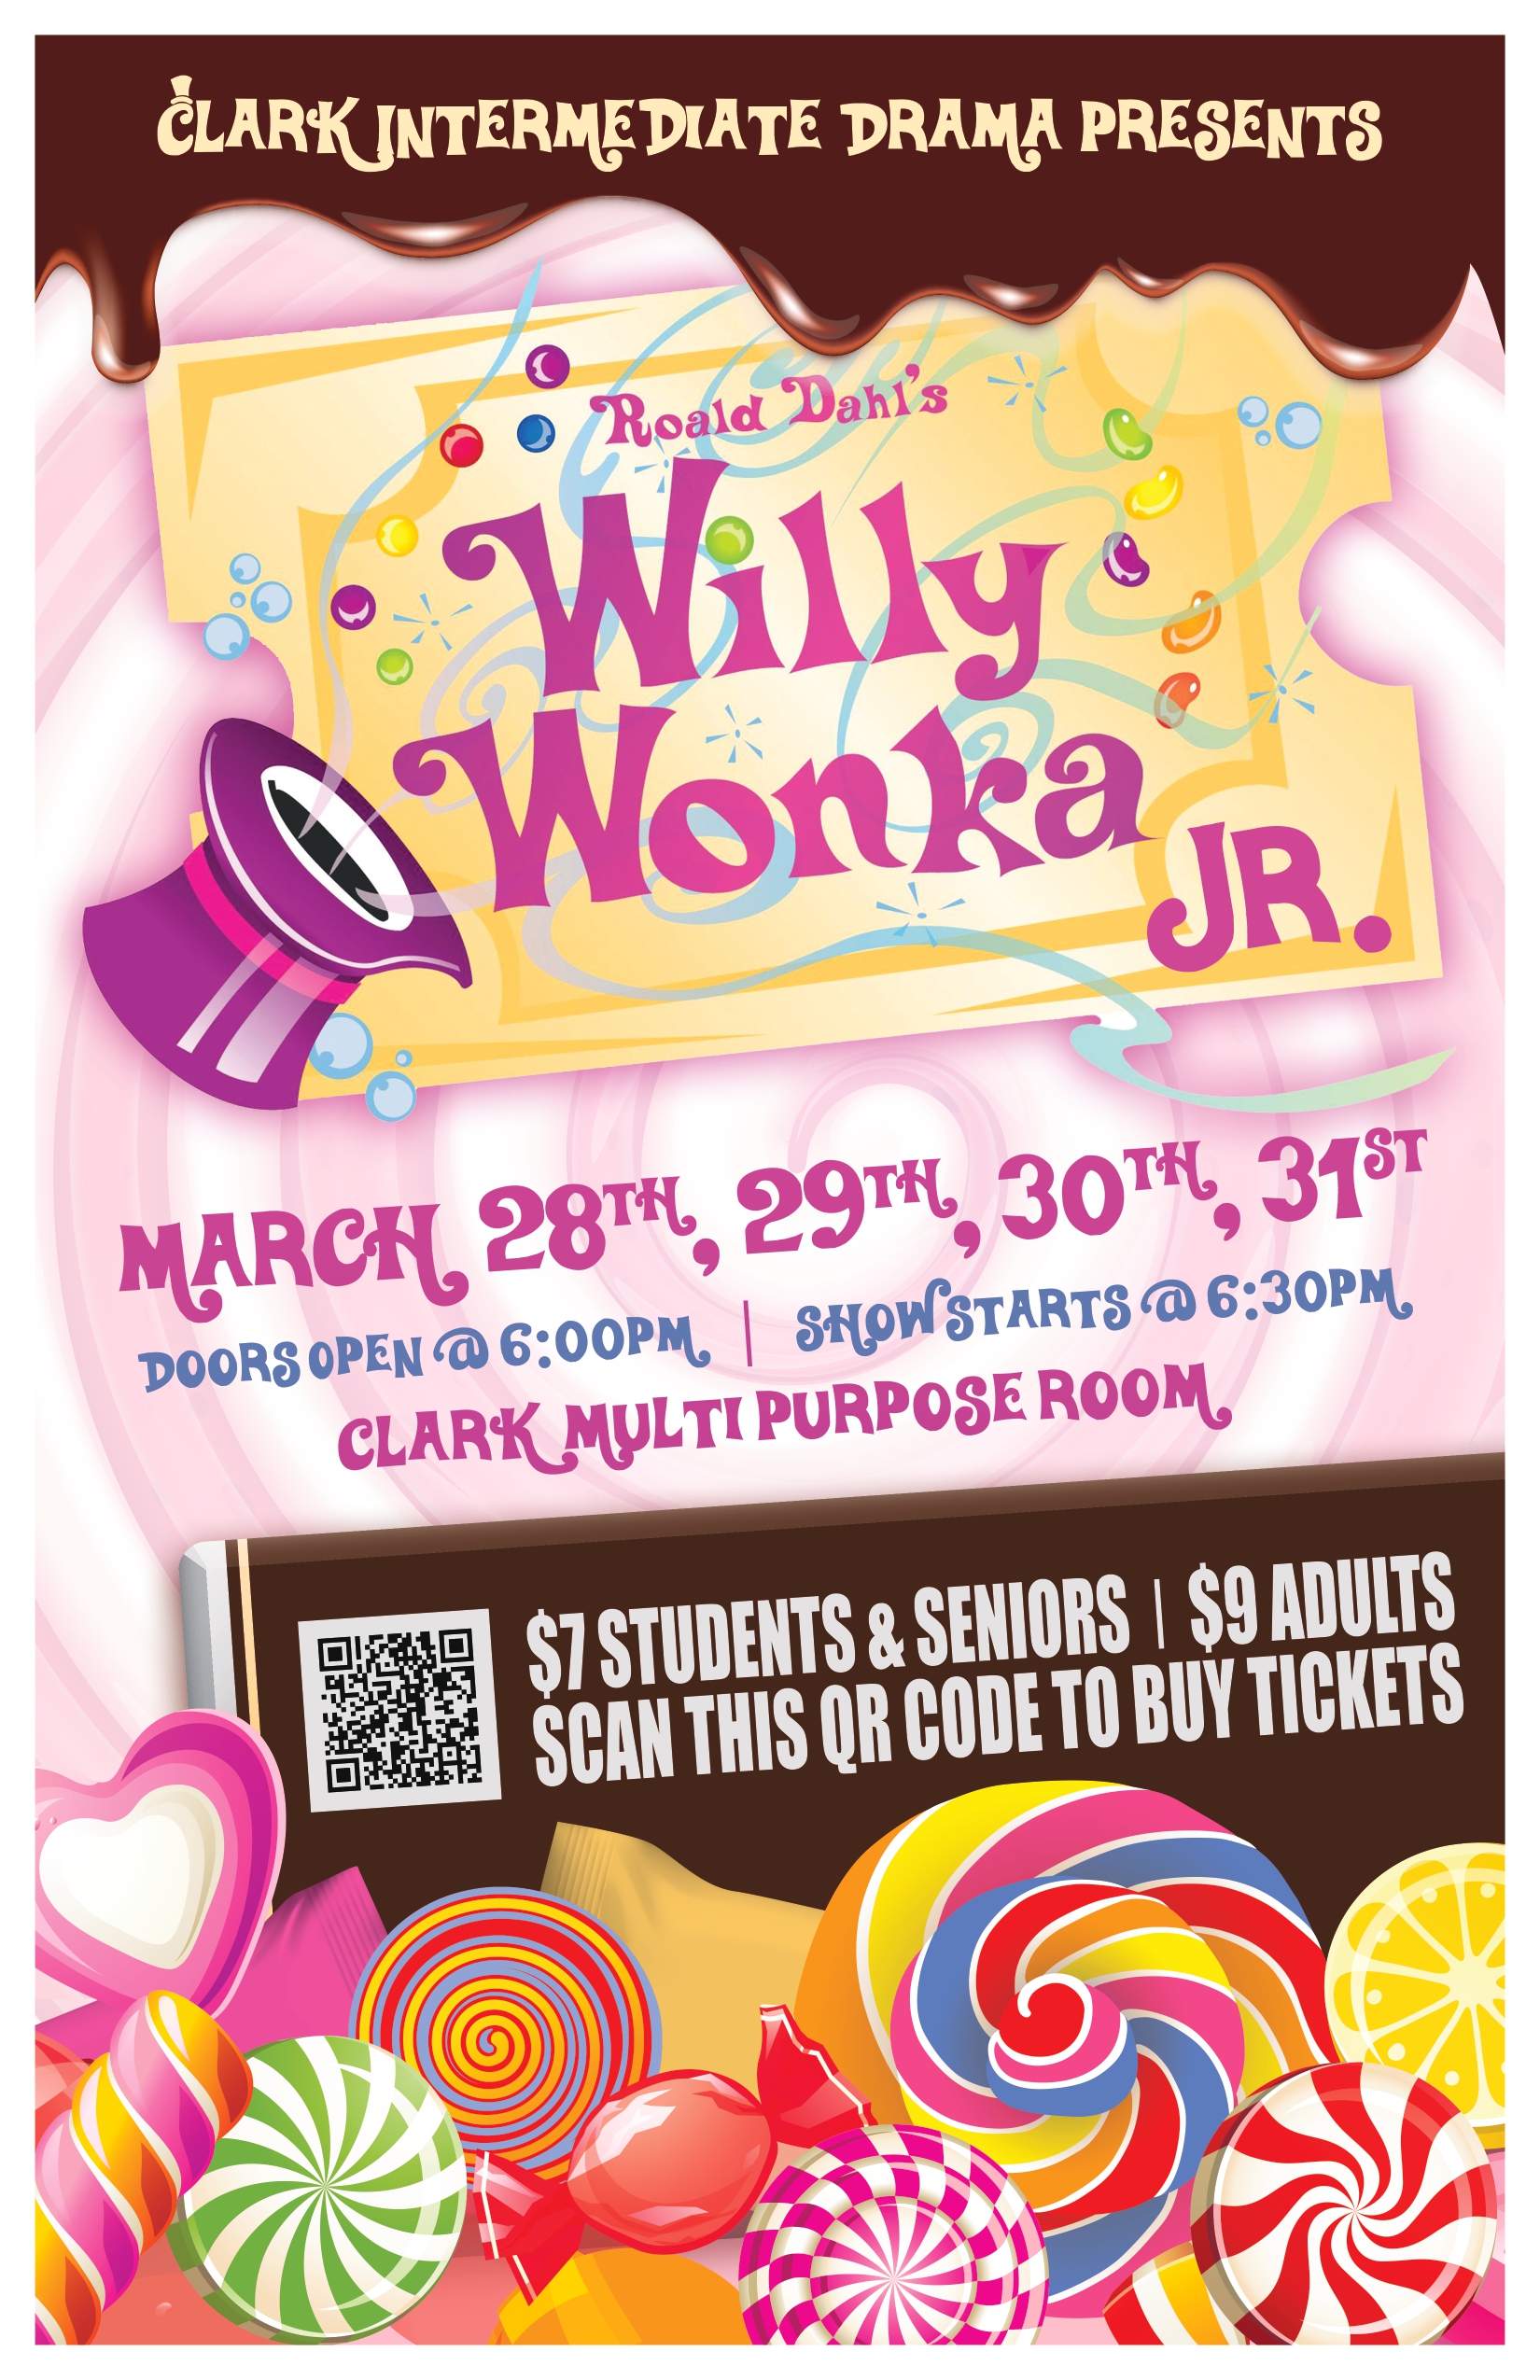 Willy Wonka Info